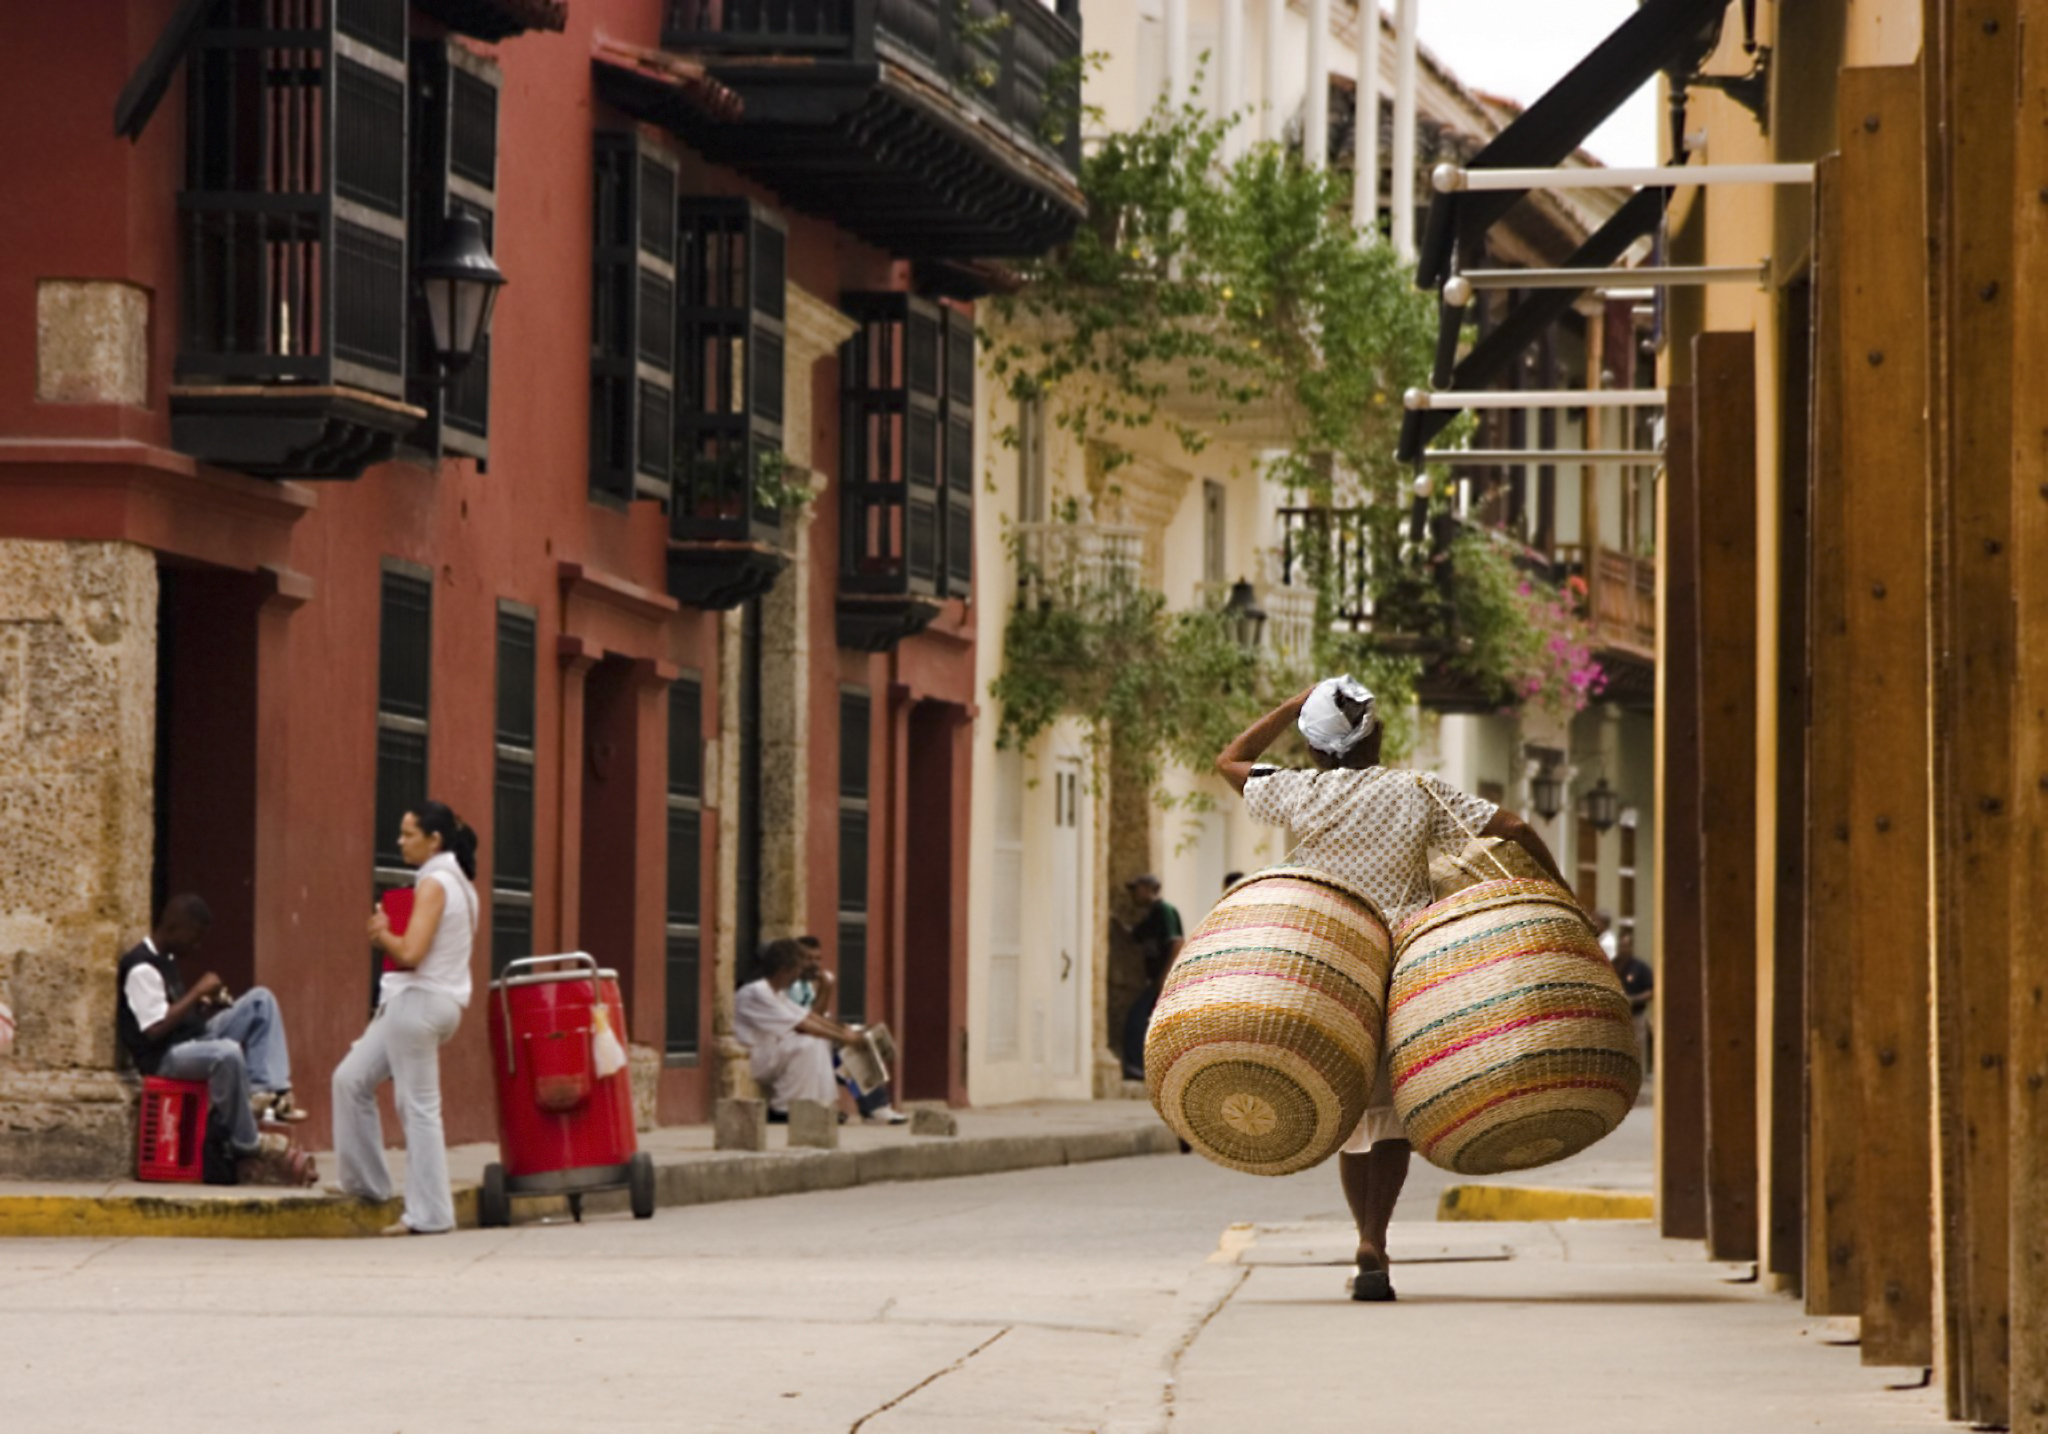 Calles típicas  del casco histórico en esta ciudad del Caribe colombiano.